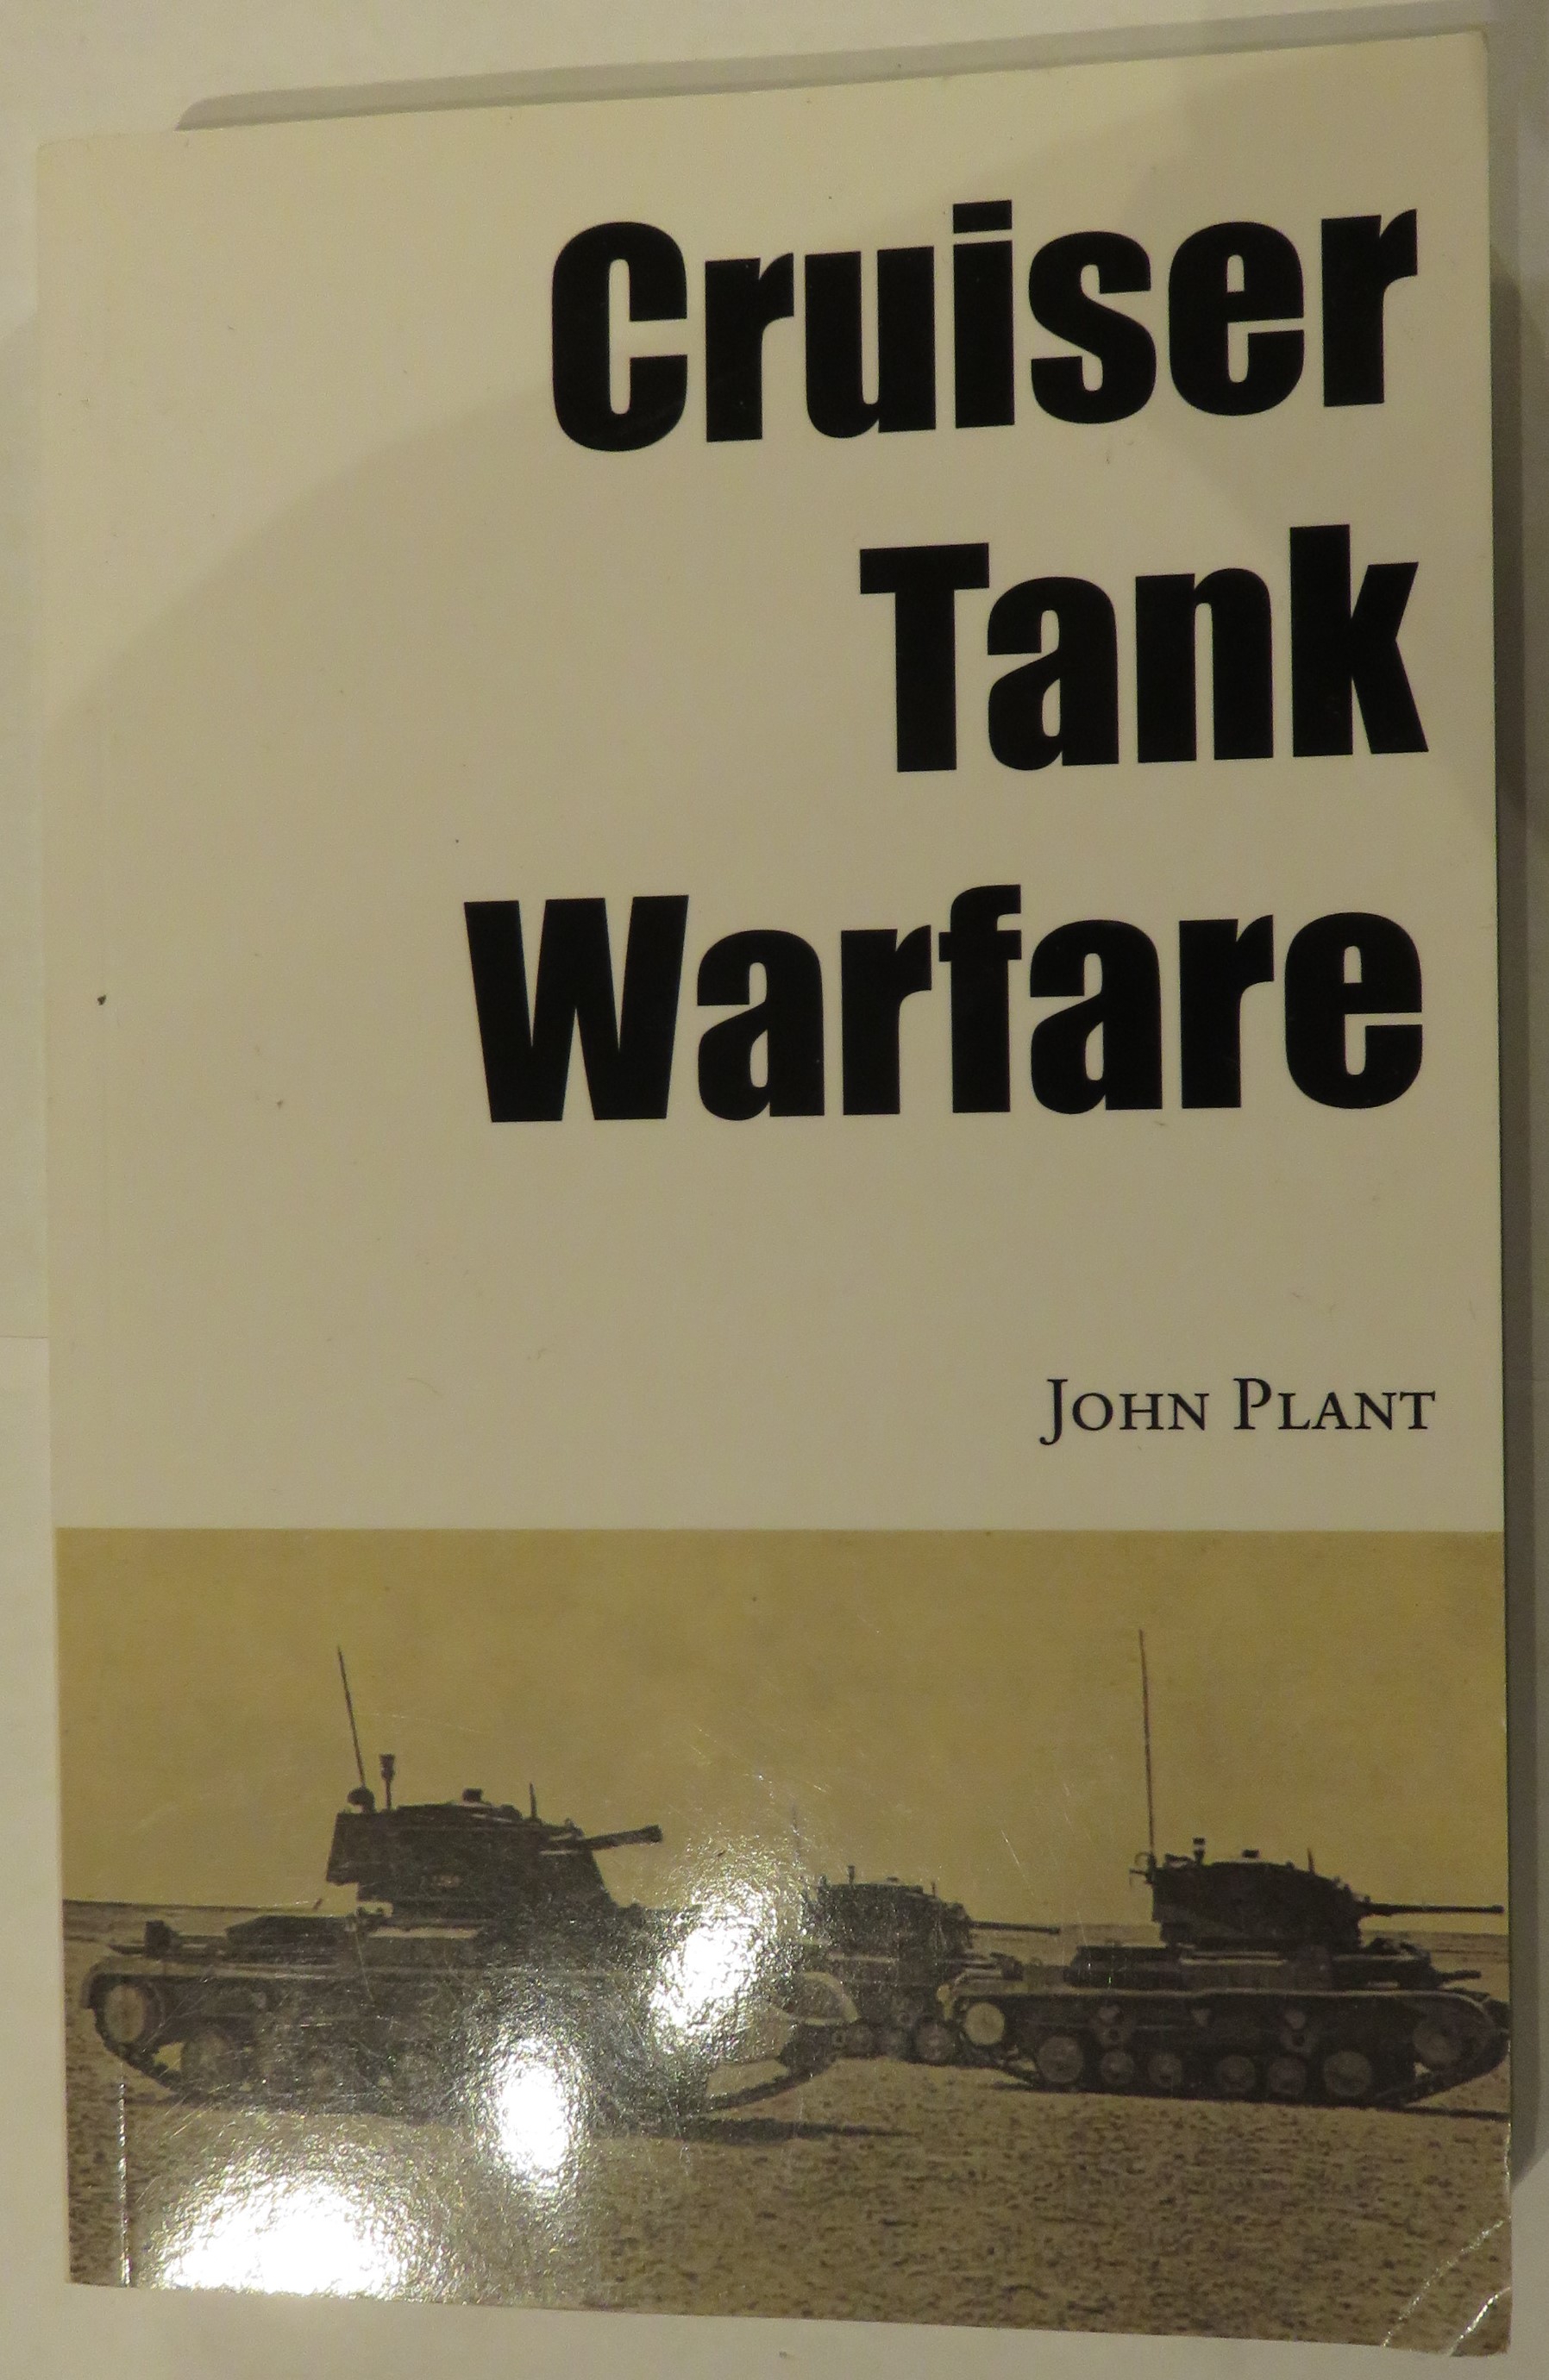 Cruiser Tank Warfare